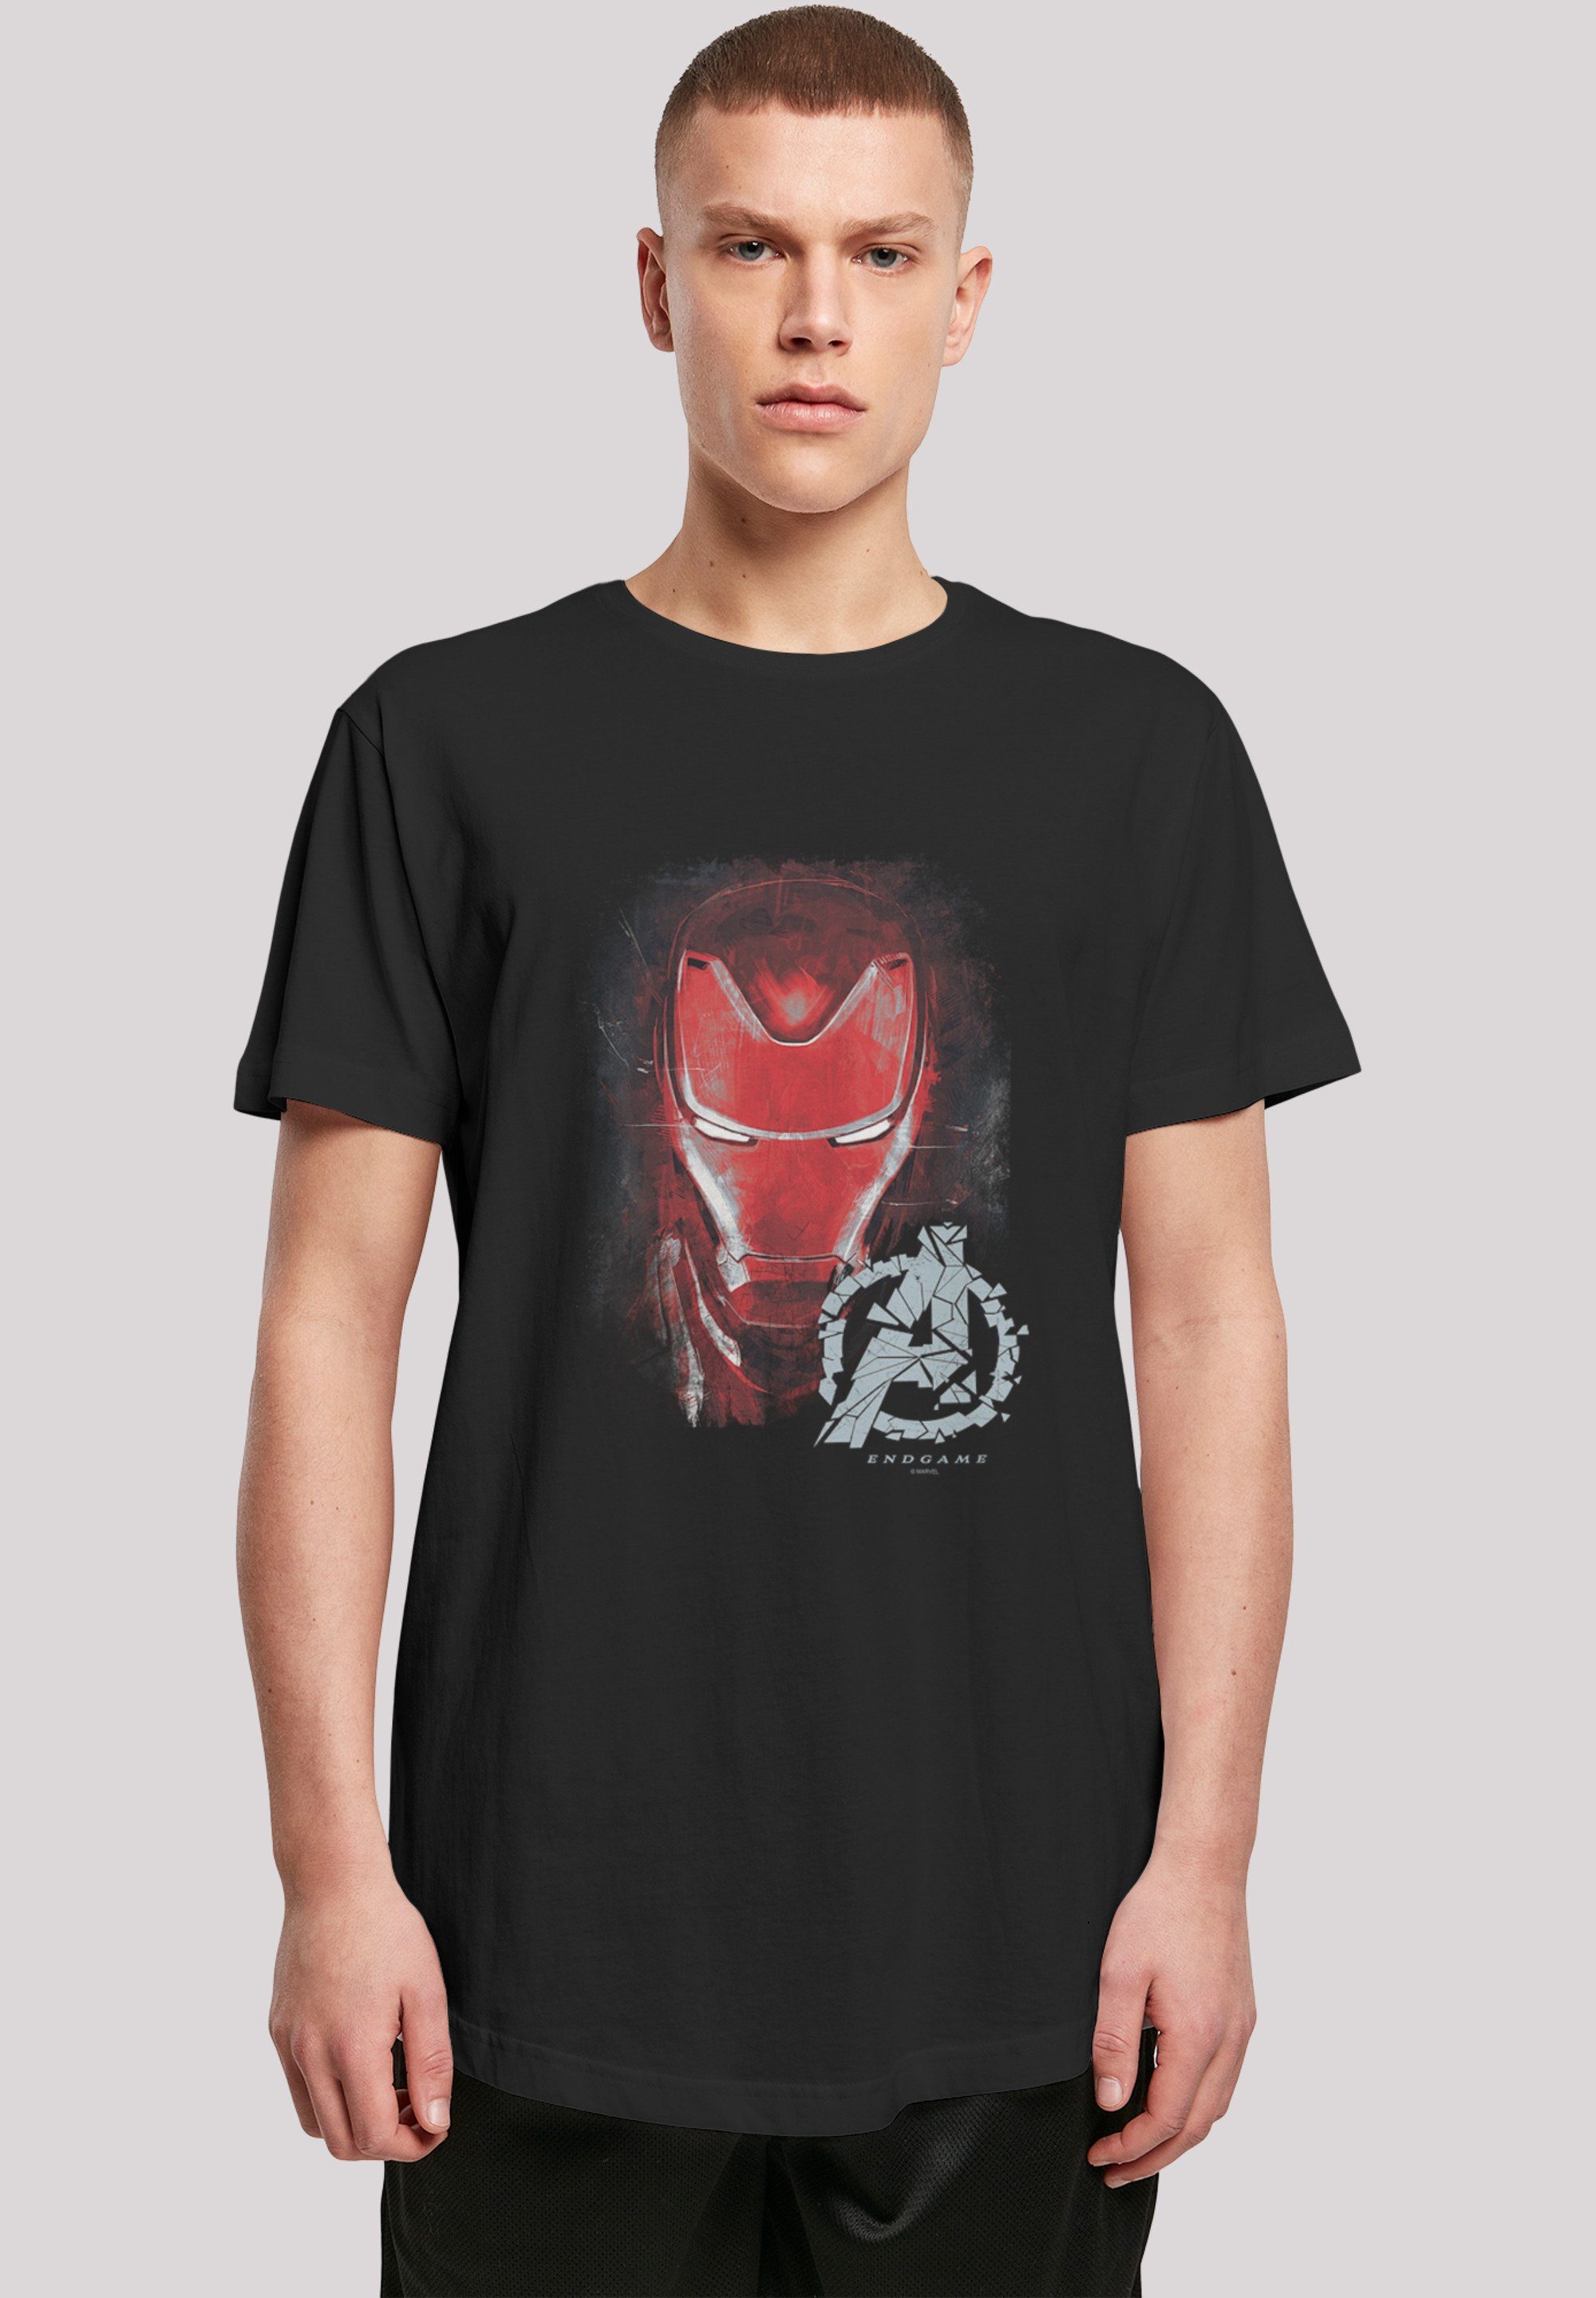 Marvel Avengers Man Print, Endgame Endgame Iron Brushed Iron T-Shirt Man F4NT4STIC Brushed Marvel